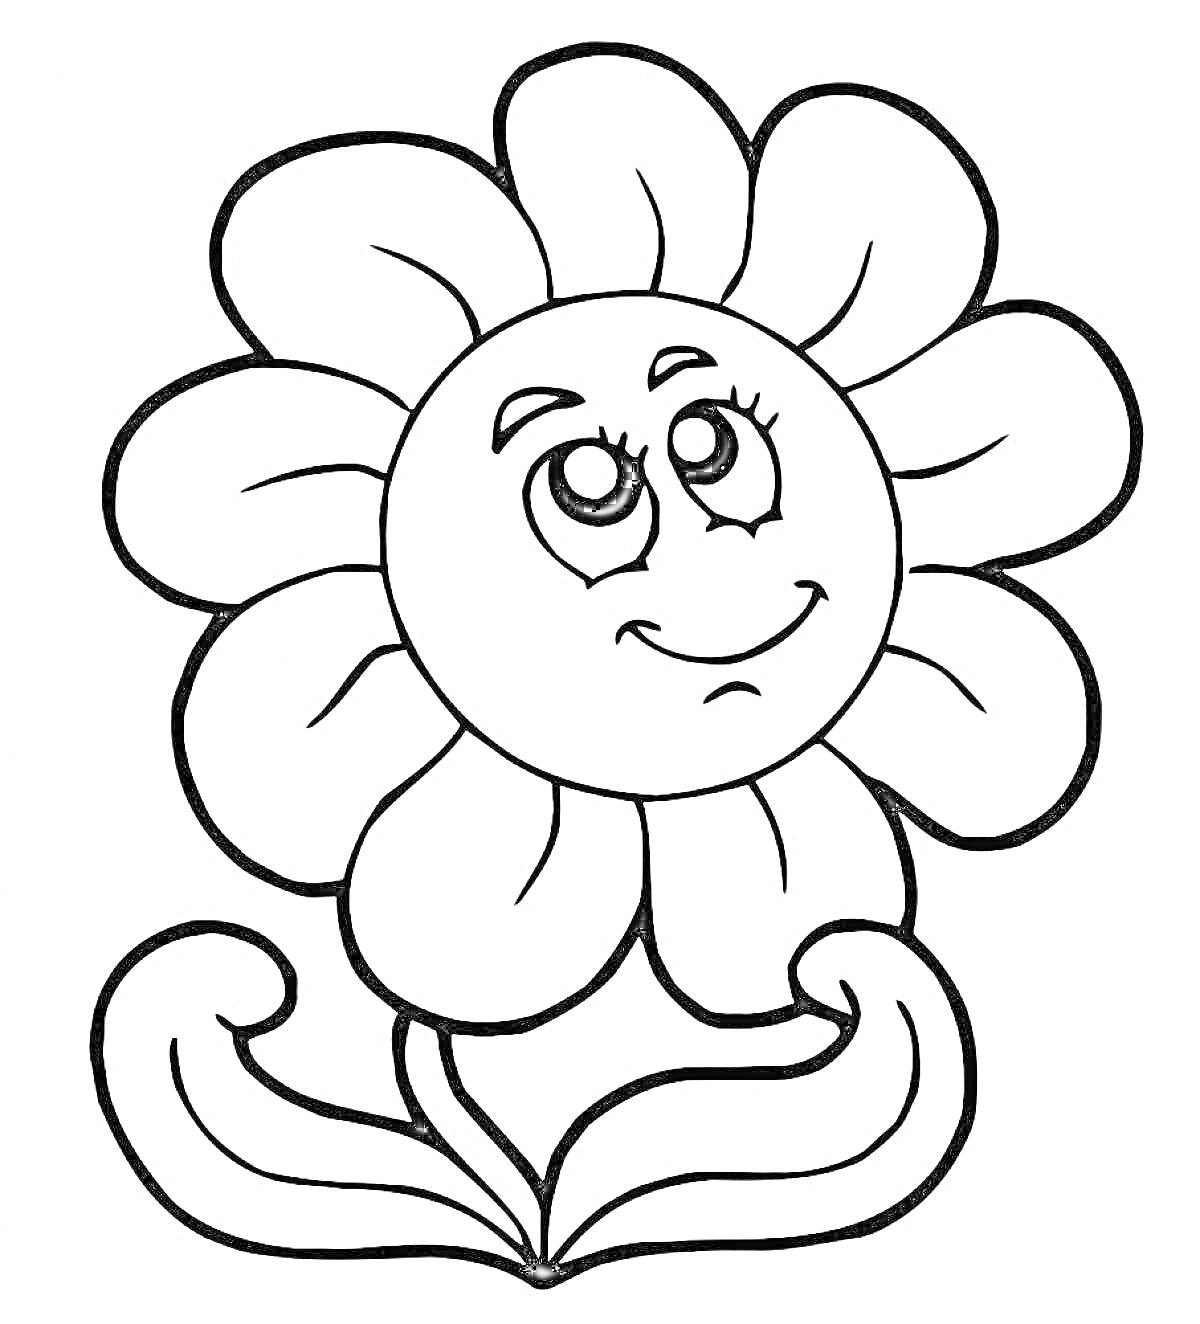 Раскраска Цветик семицветик с улыбающимся лицом и двумя листьями